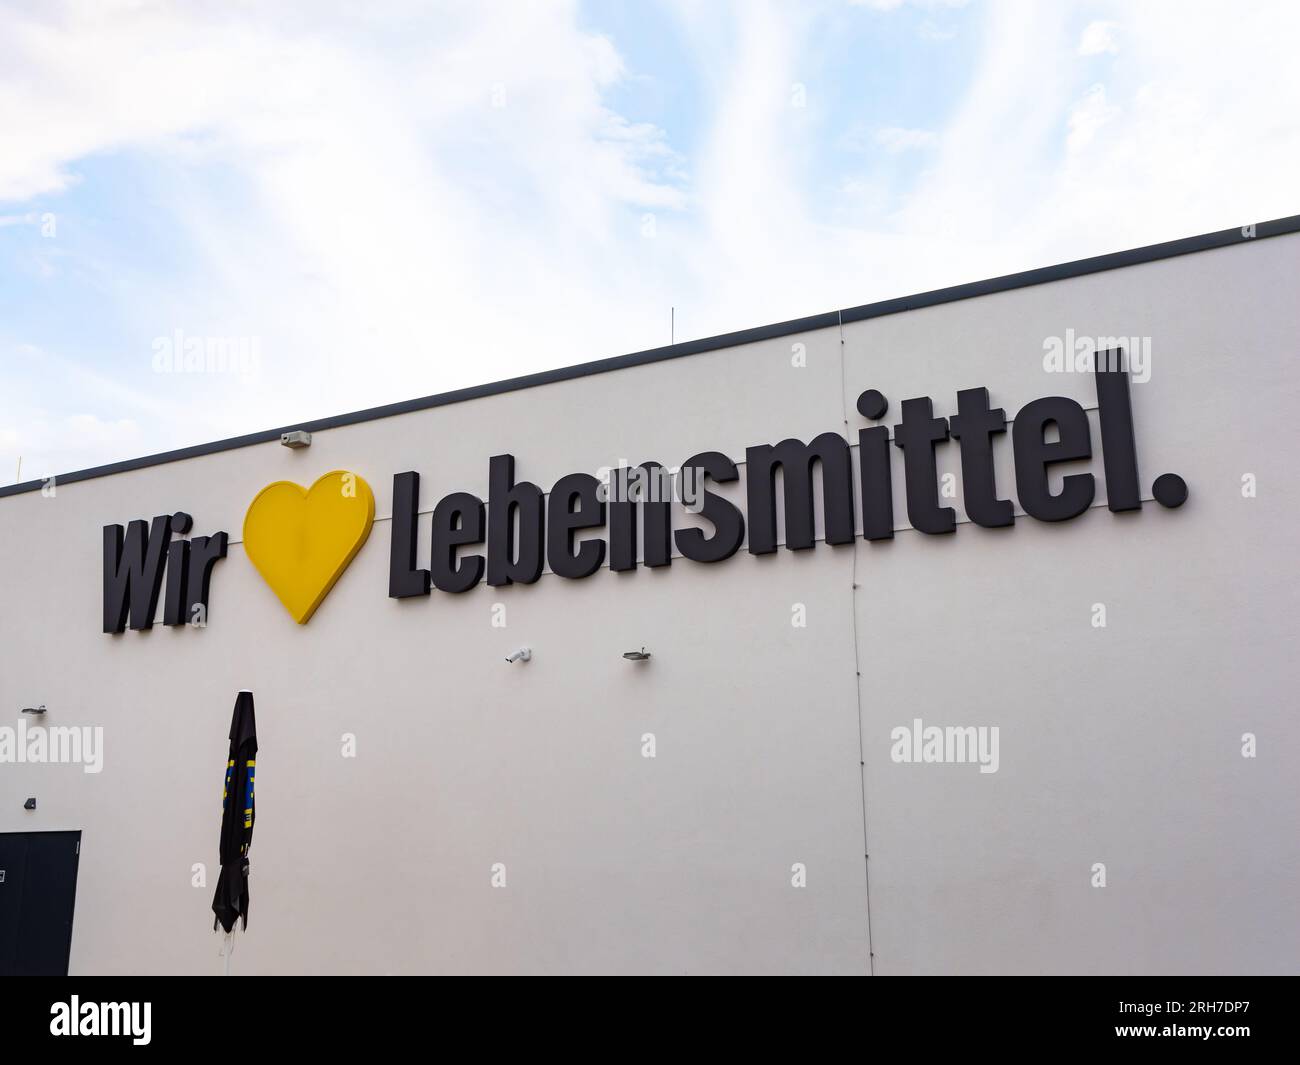 Slogan WIR lieben Lebensmittel (We Love food) sulla facciata di un supermercato Edeka. Pubblicità sull'edificio del negozio di alimentari tedesco. Foto Stock